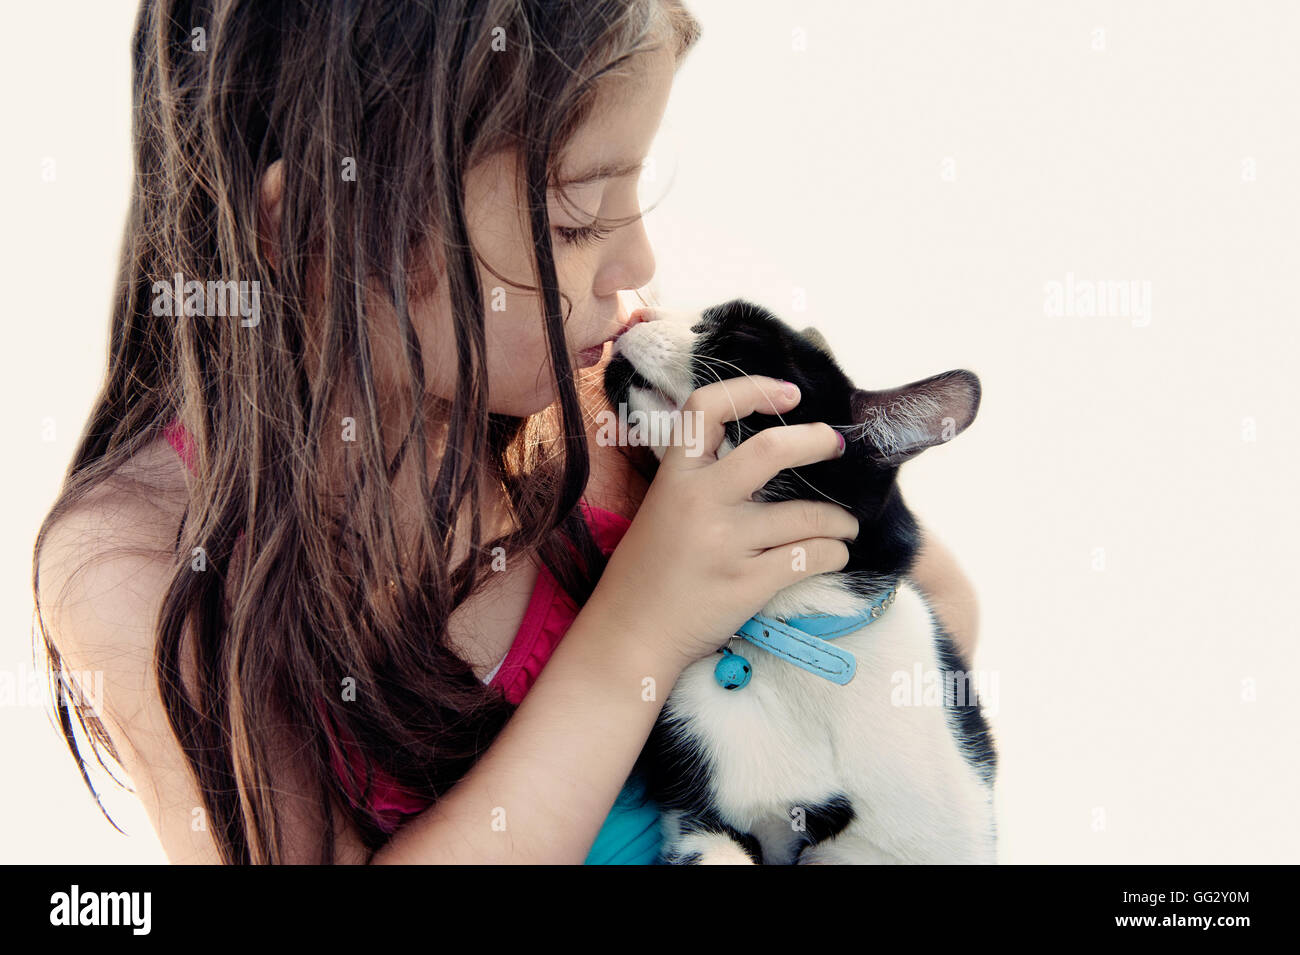 Little girl kissing her cat Stock Photo